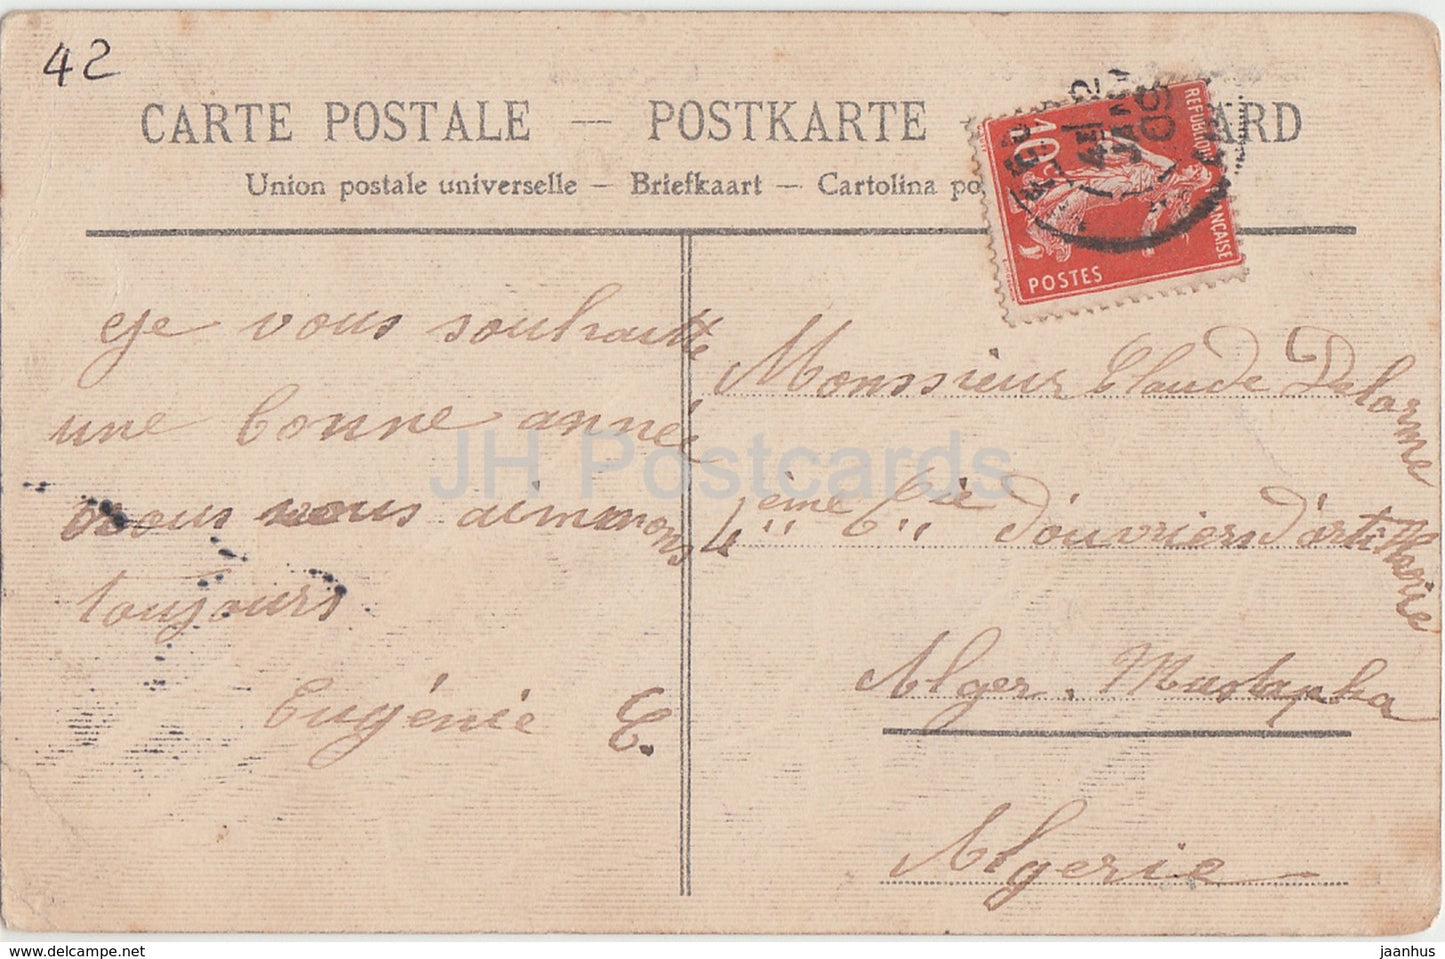 St Marcel de Felines - près Balbigny - Le Château - château - carte postale ancienne - 1909 - France - utilisé